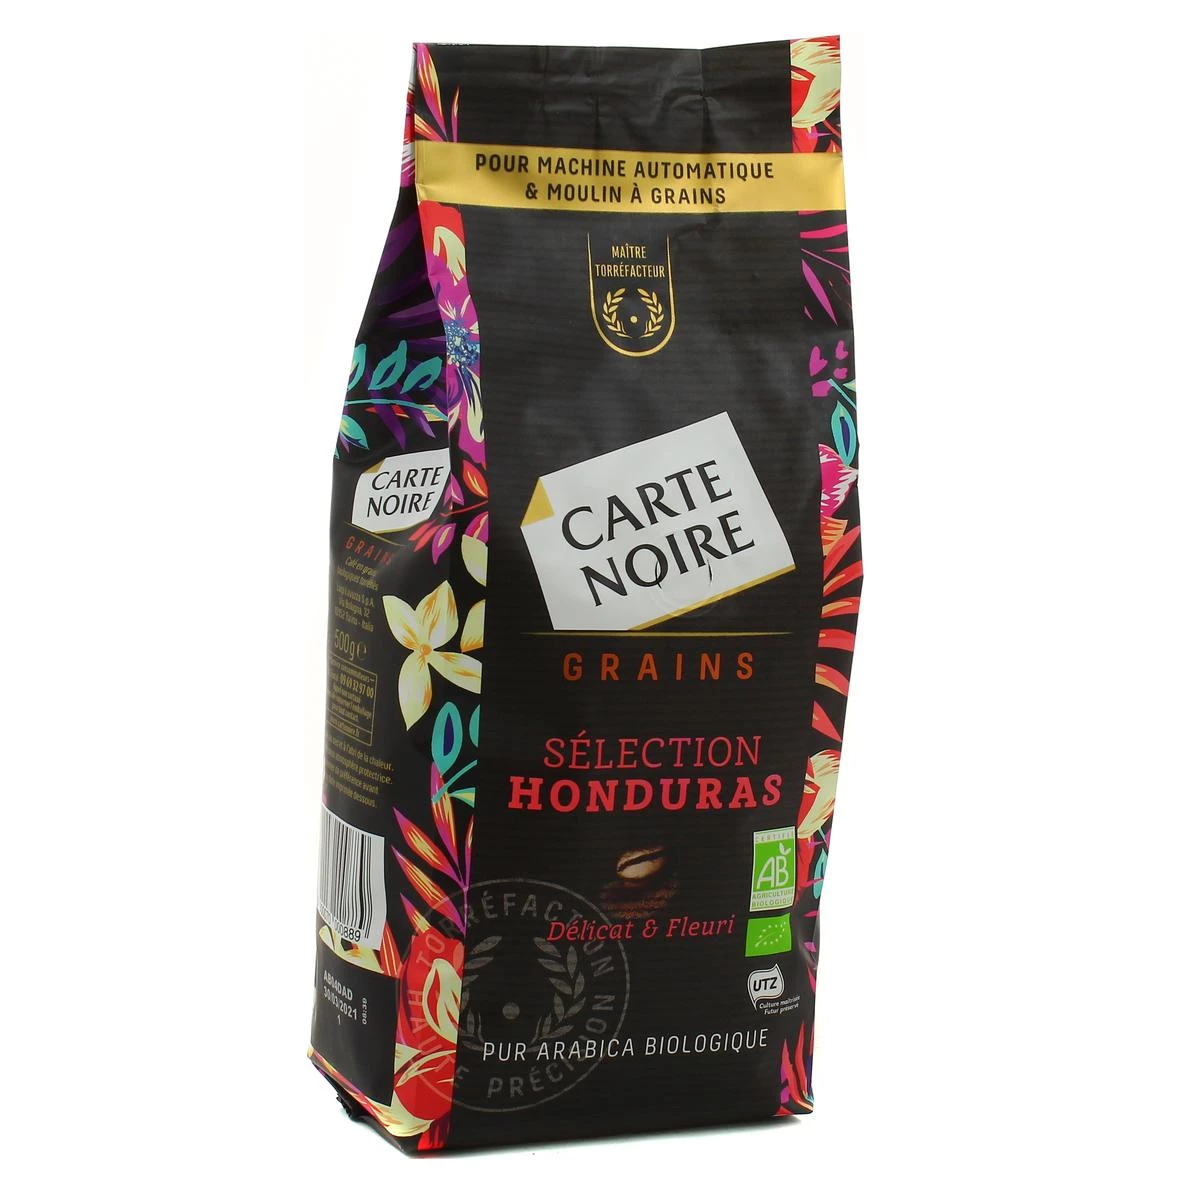 有机洪都拉斯精选咖啡豆 500 克 - CARTE NOIRE